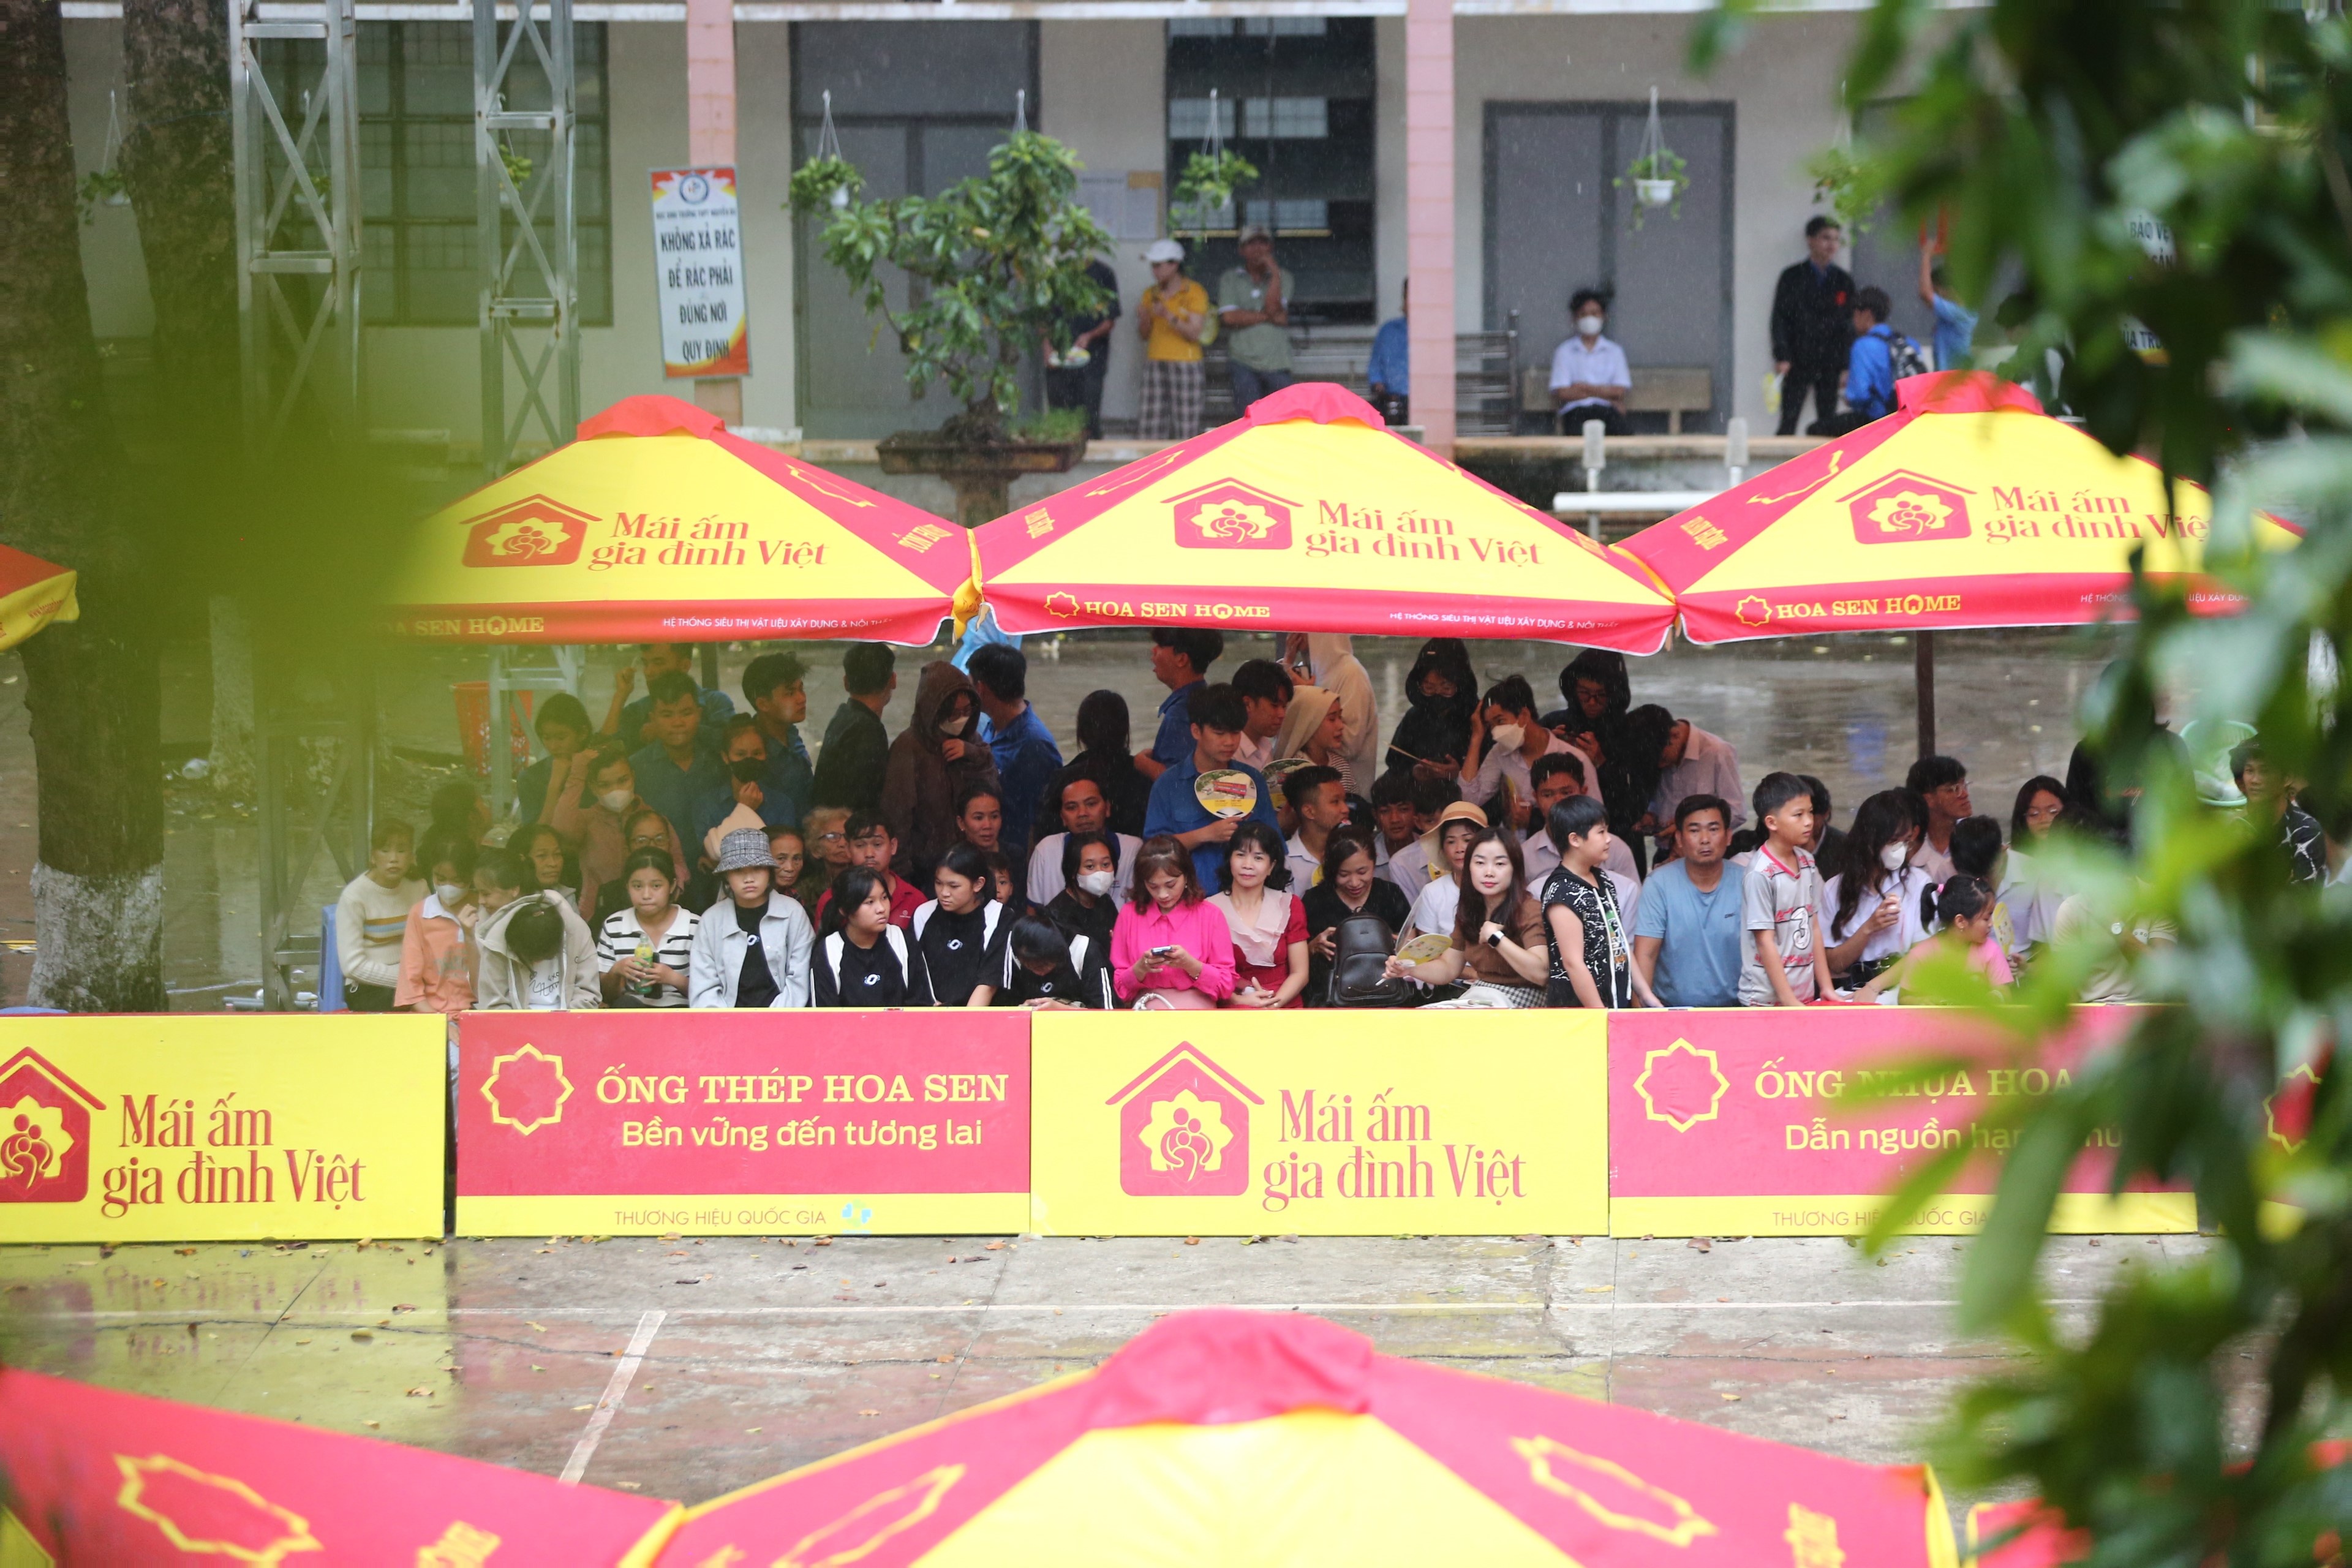 Dù mưa lớn liên tục nhưng khán giả tại trường quay vẫn nán lại để cổ vũ cho các em nhỏ Mái ấm gia đình Việt